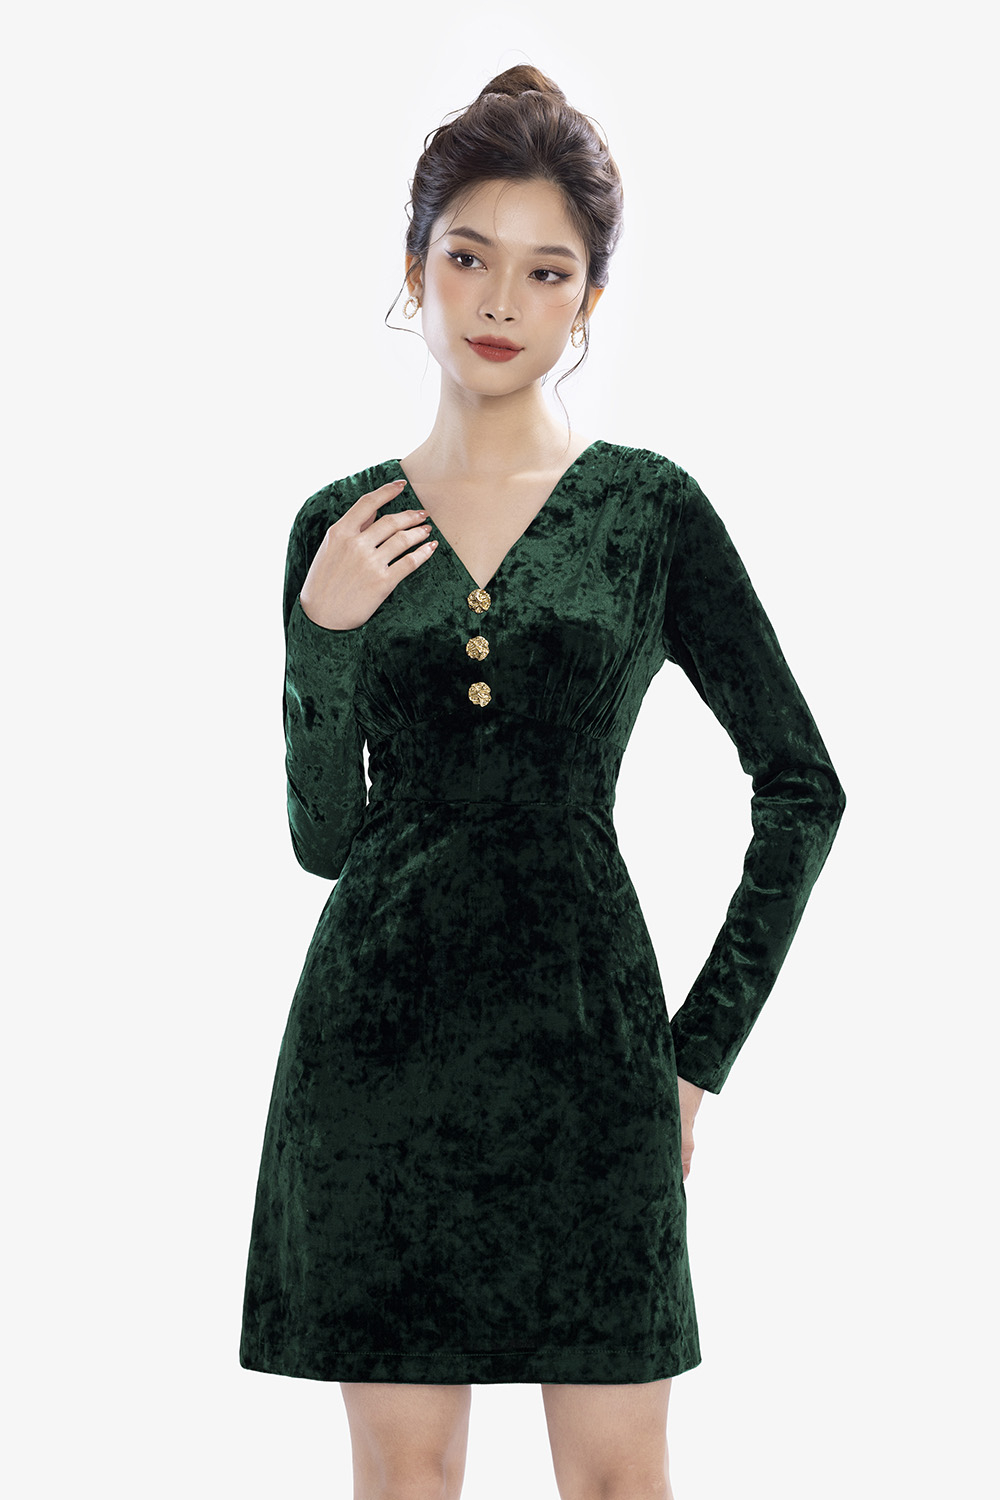 Xem Ngay Top 20+ những mẫu váy suông trẻ trung [Triệu View] - Cosy